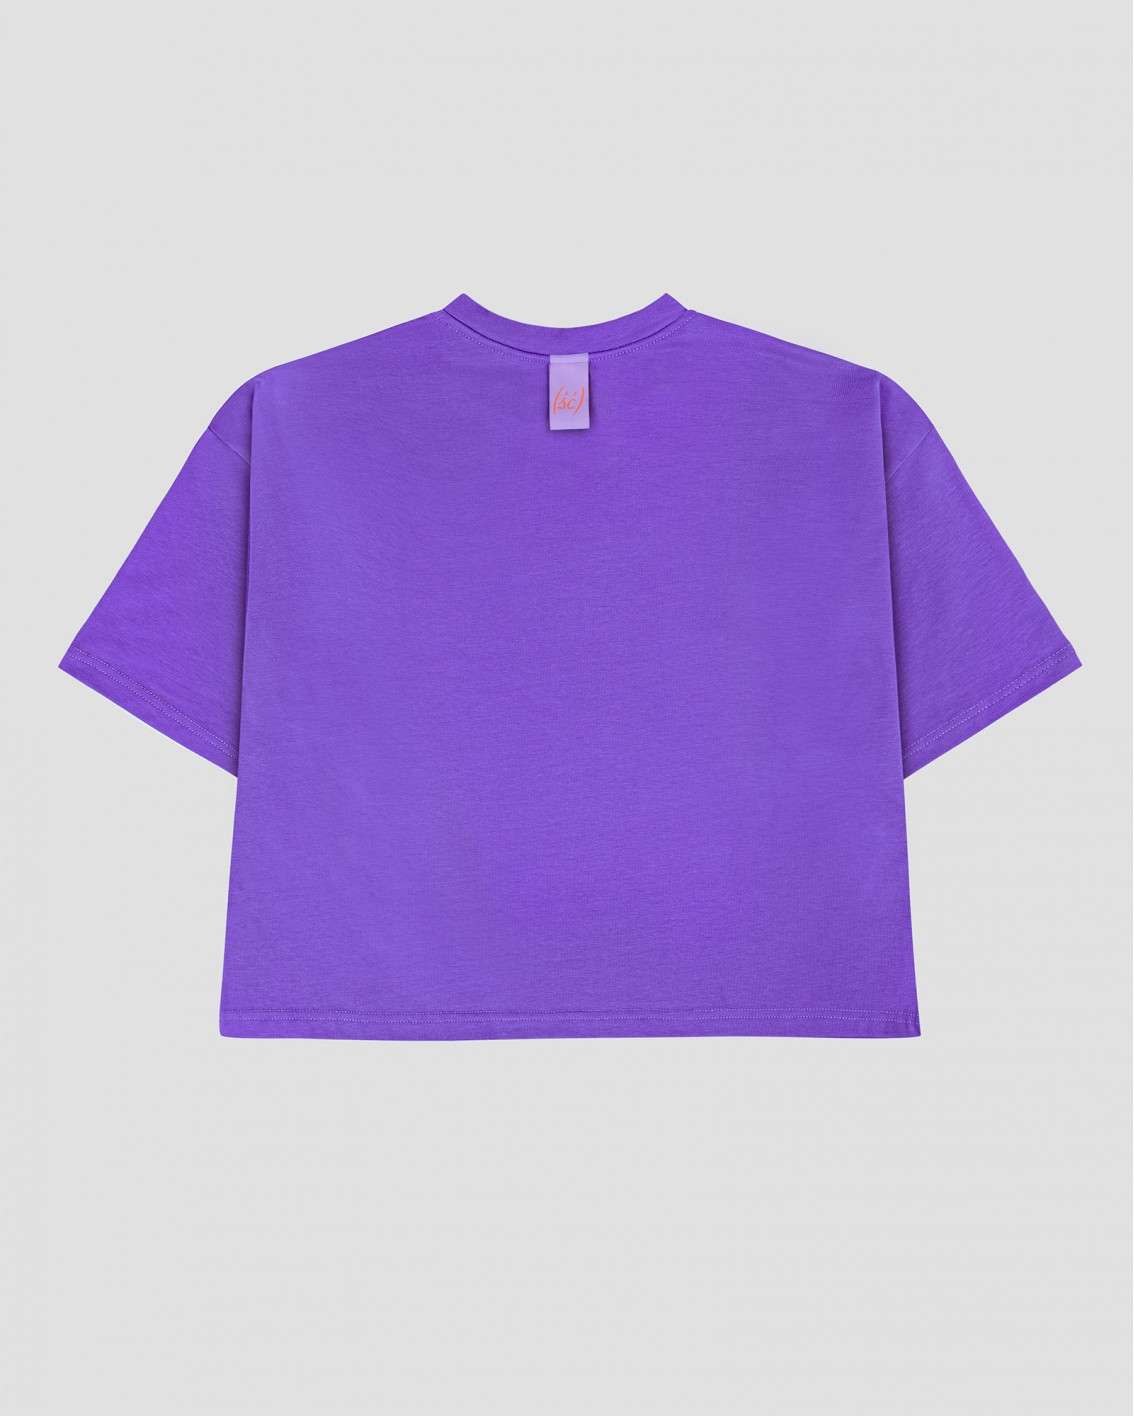 NEW! Fioletowy t-shirt (ść)